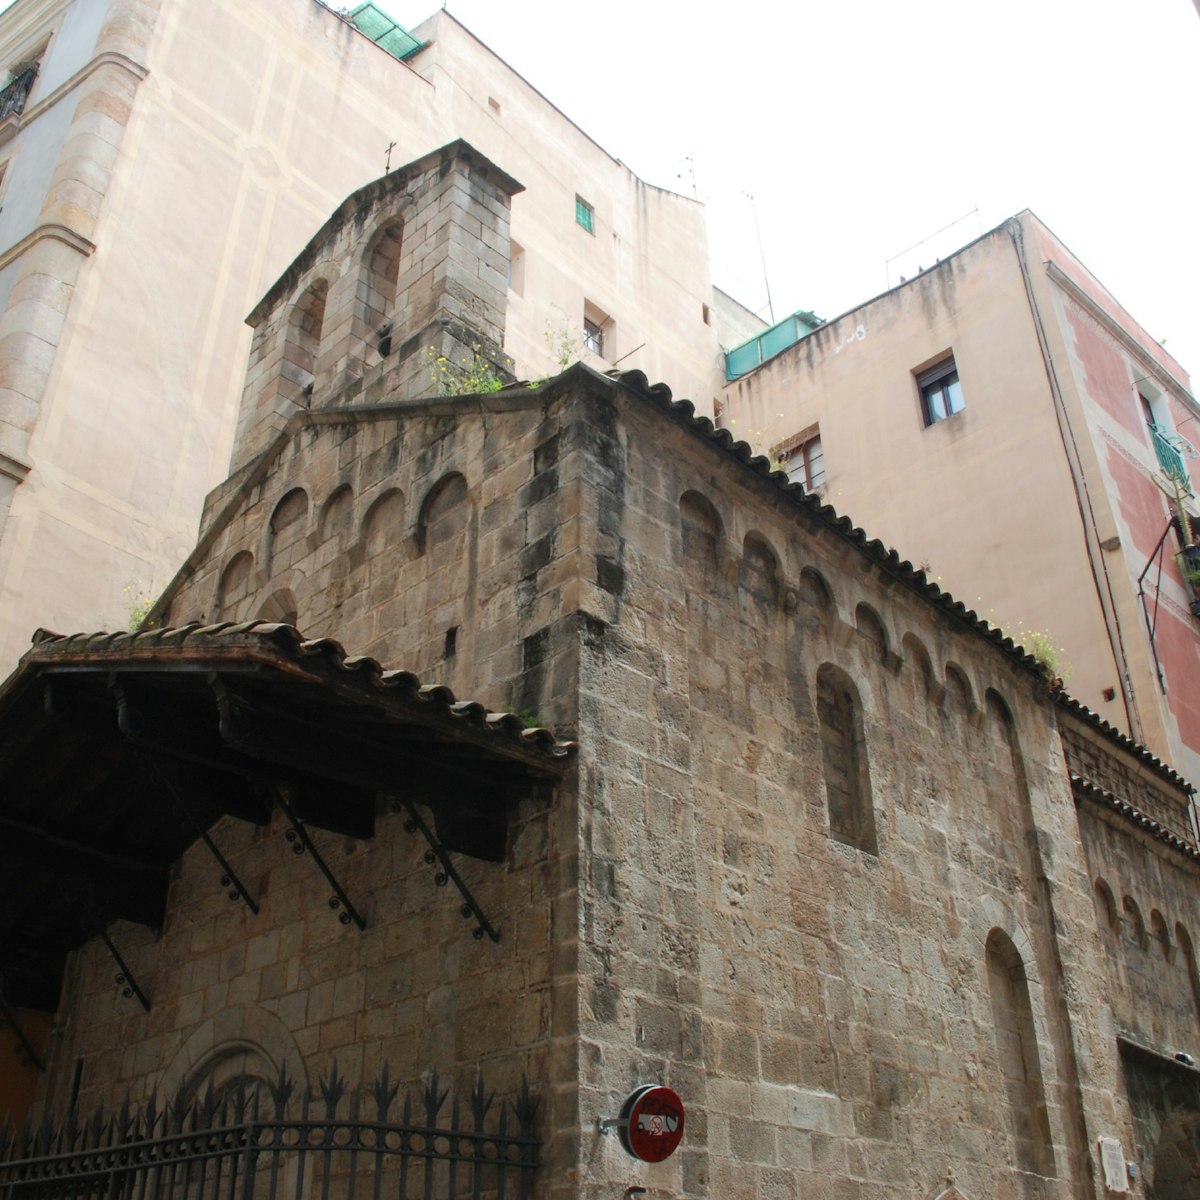 Facade of Capella d'en Marcús